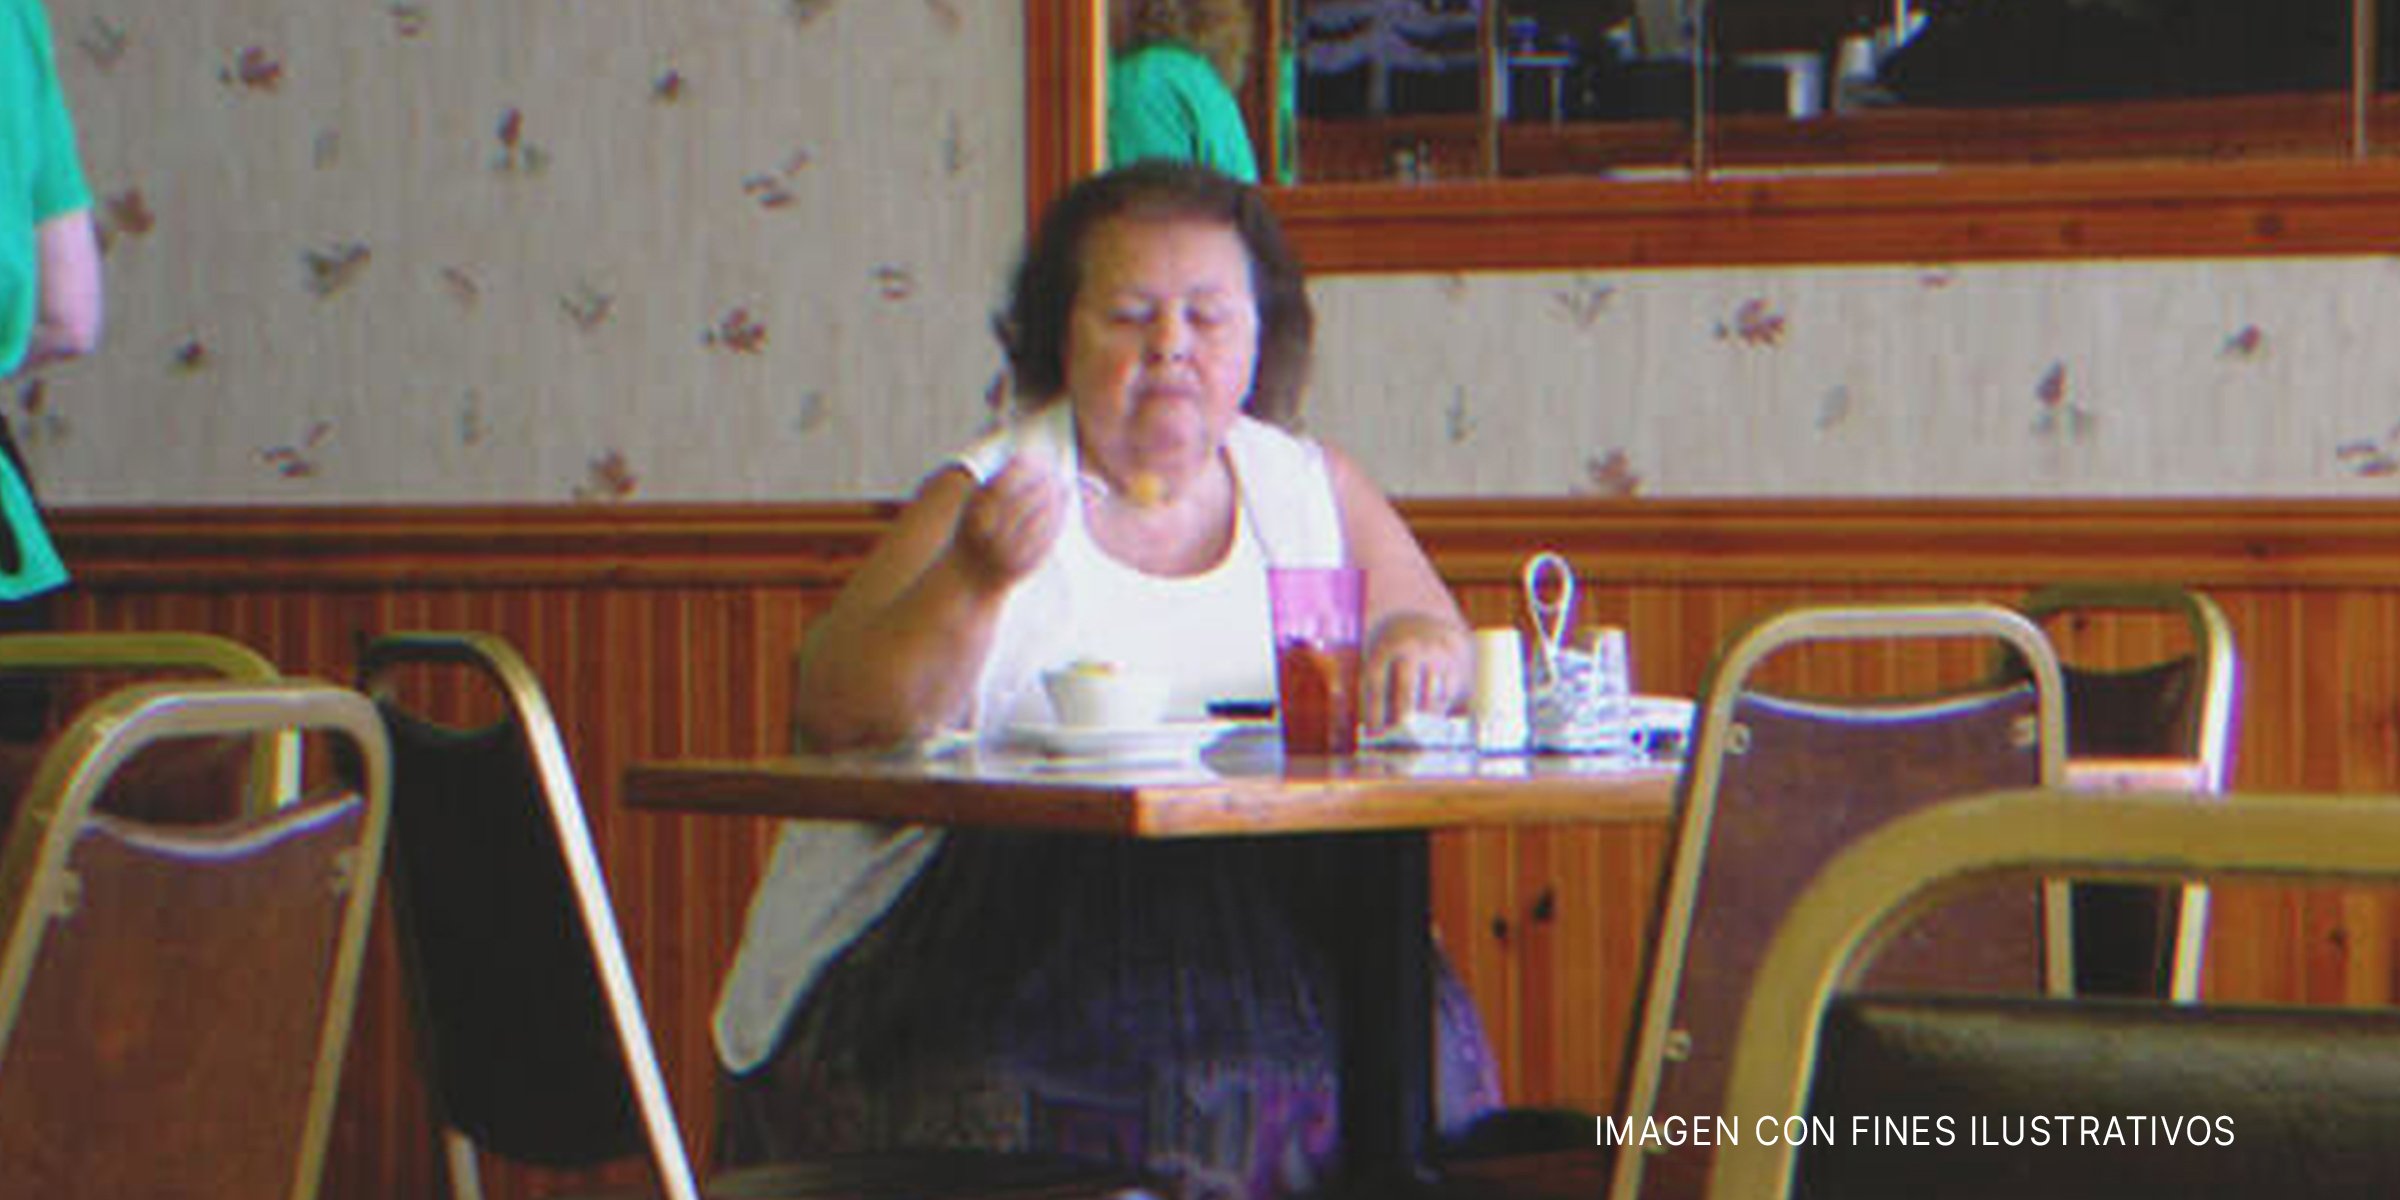 Mujer comiendo en un restaurant | Foto: flickr.com/joguldi (CC BY 2.0)